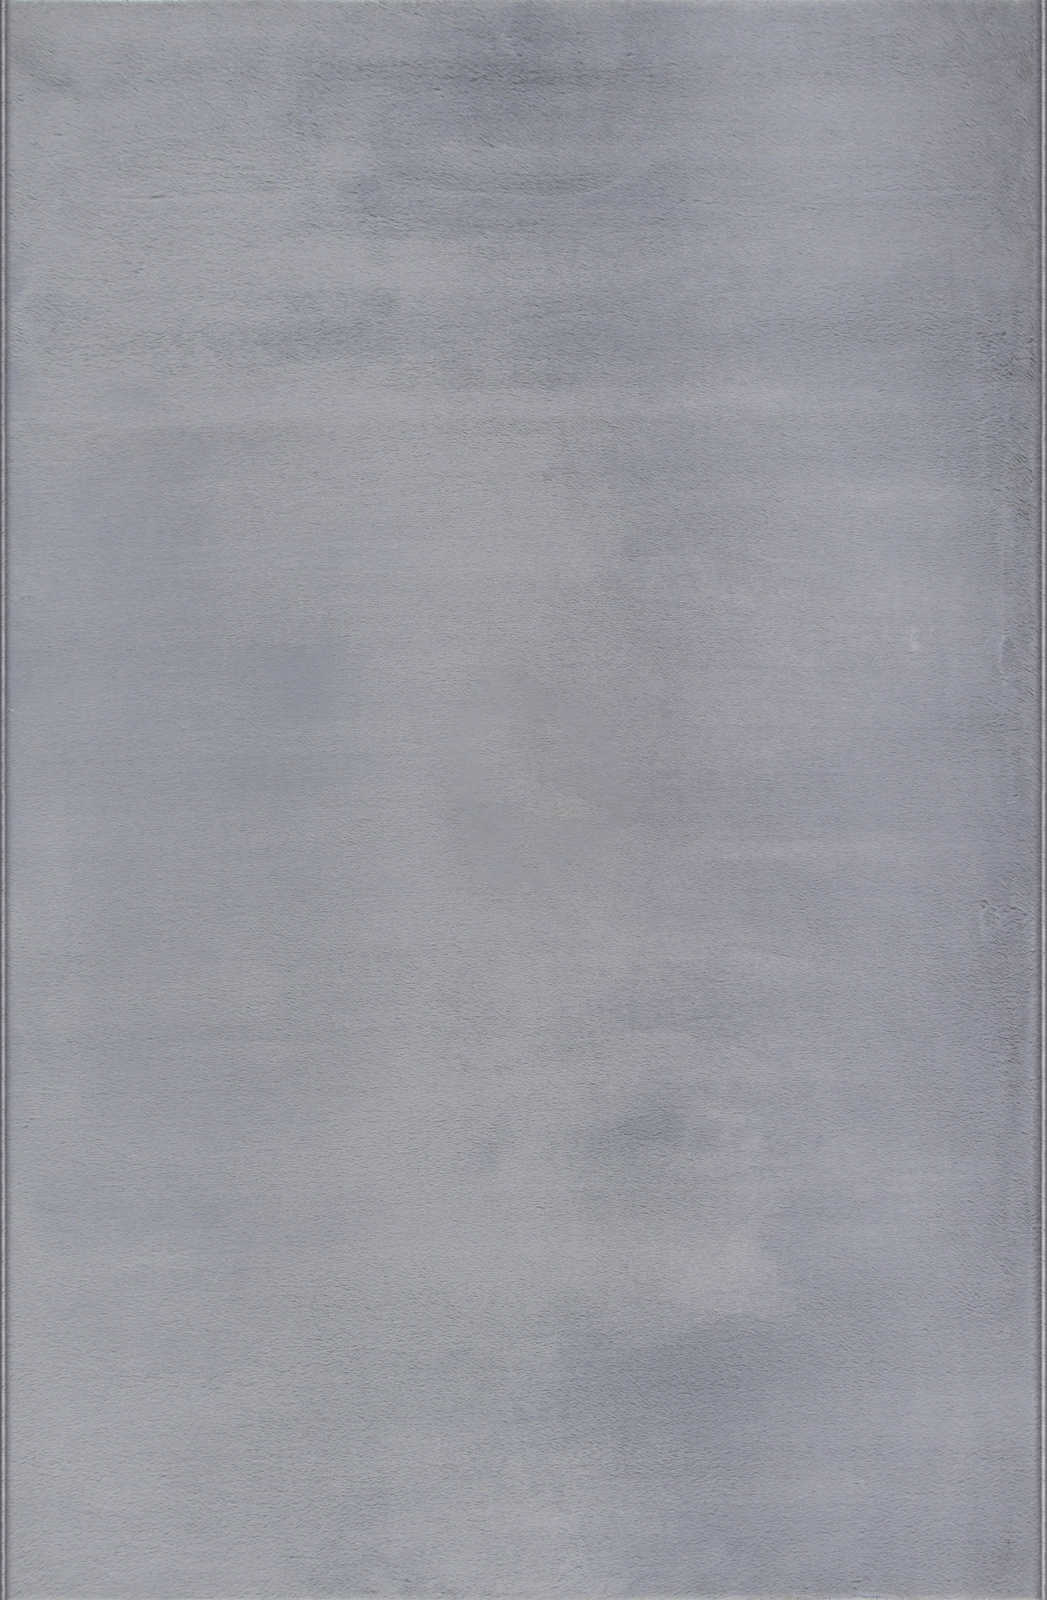             Confortevole tappeto a pelo alto in morbido grigio - 100 x 50 cm
        